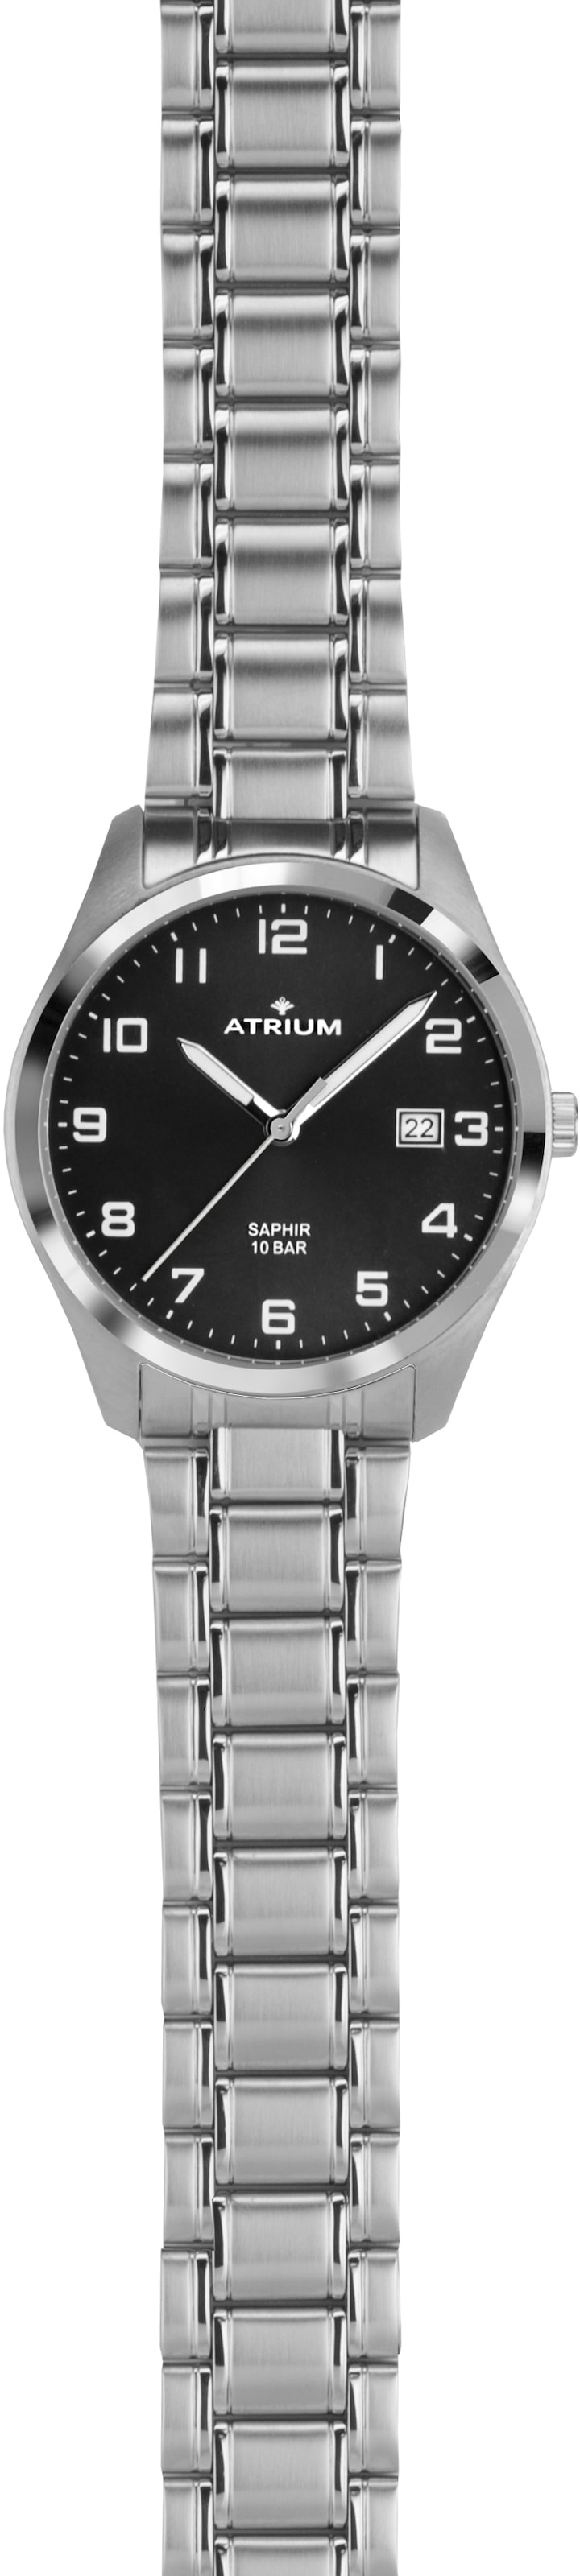 Atrium Quarzuhr »A42-31«, Armbanduhr, Herrenuhr, Datum, Saphirglas